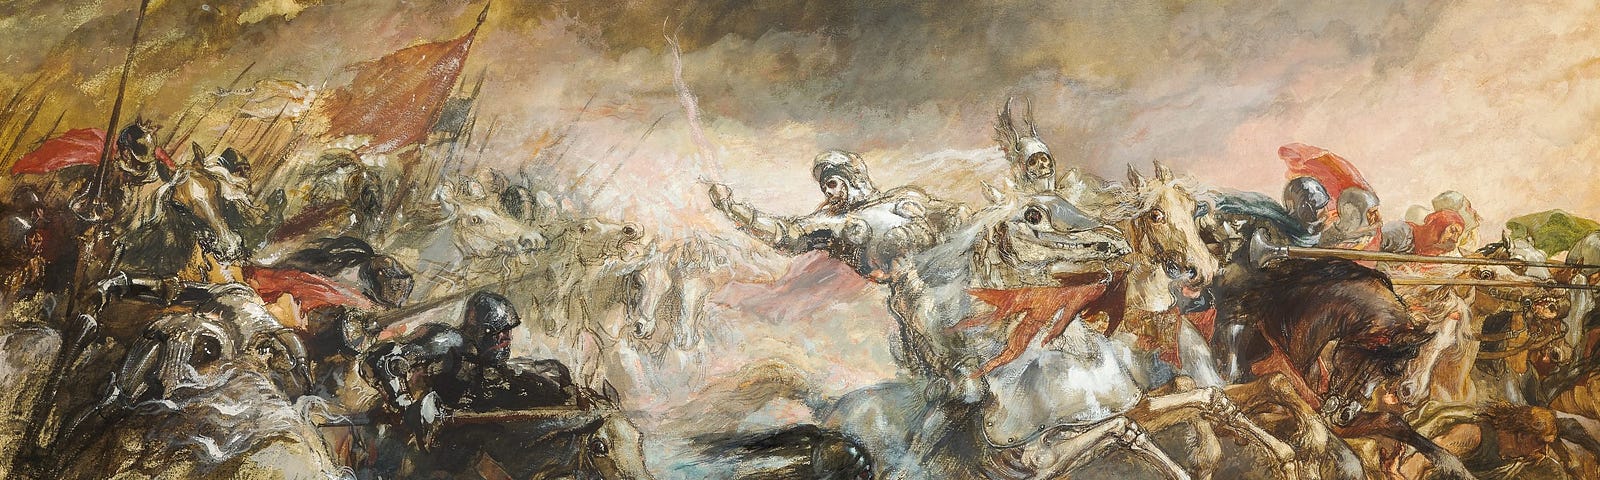 Warriors on horseback in the mayhem of battle.